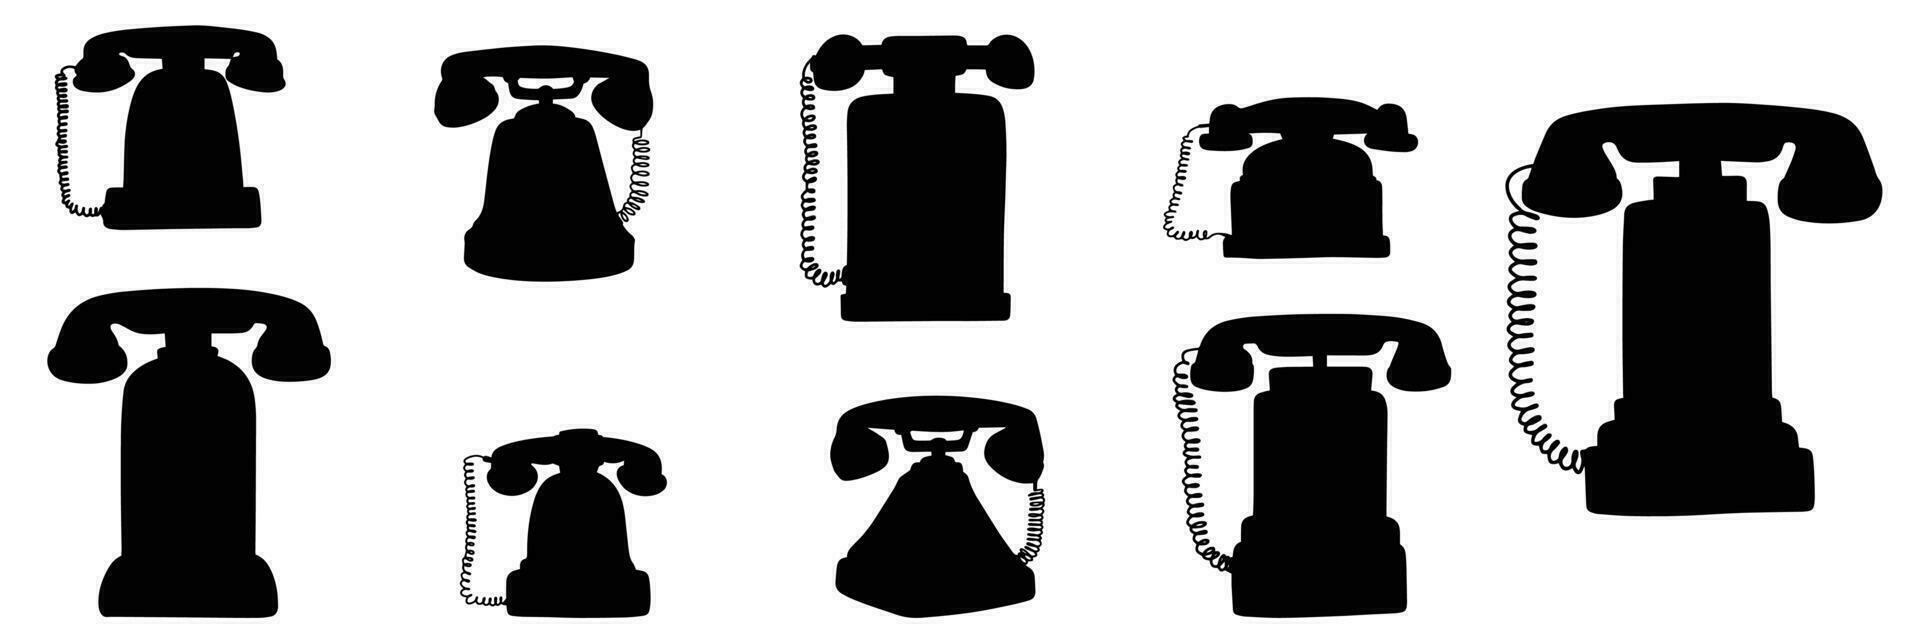 Sammlung von retro Telefone Silhouette. Hand gezeichnet Telefon Vektor Illustration.